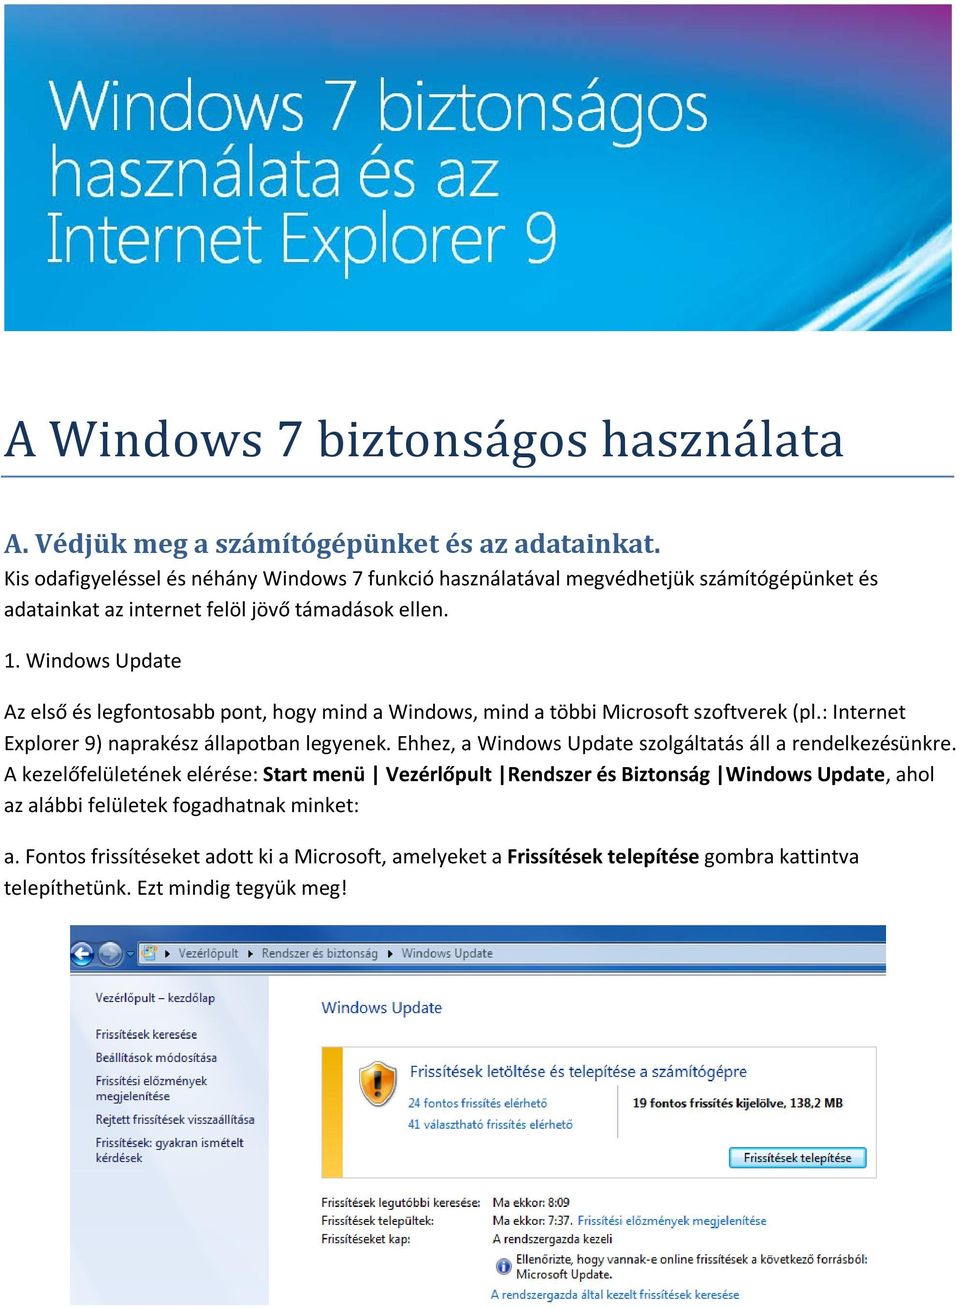 Windows Update Az első és legfontosabb pont, hogy mind a Windows, mind a többi Microsoft szoftverek (pl.: Internet Explorer 9) naprakész állapotban legyenek.